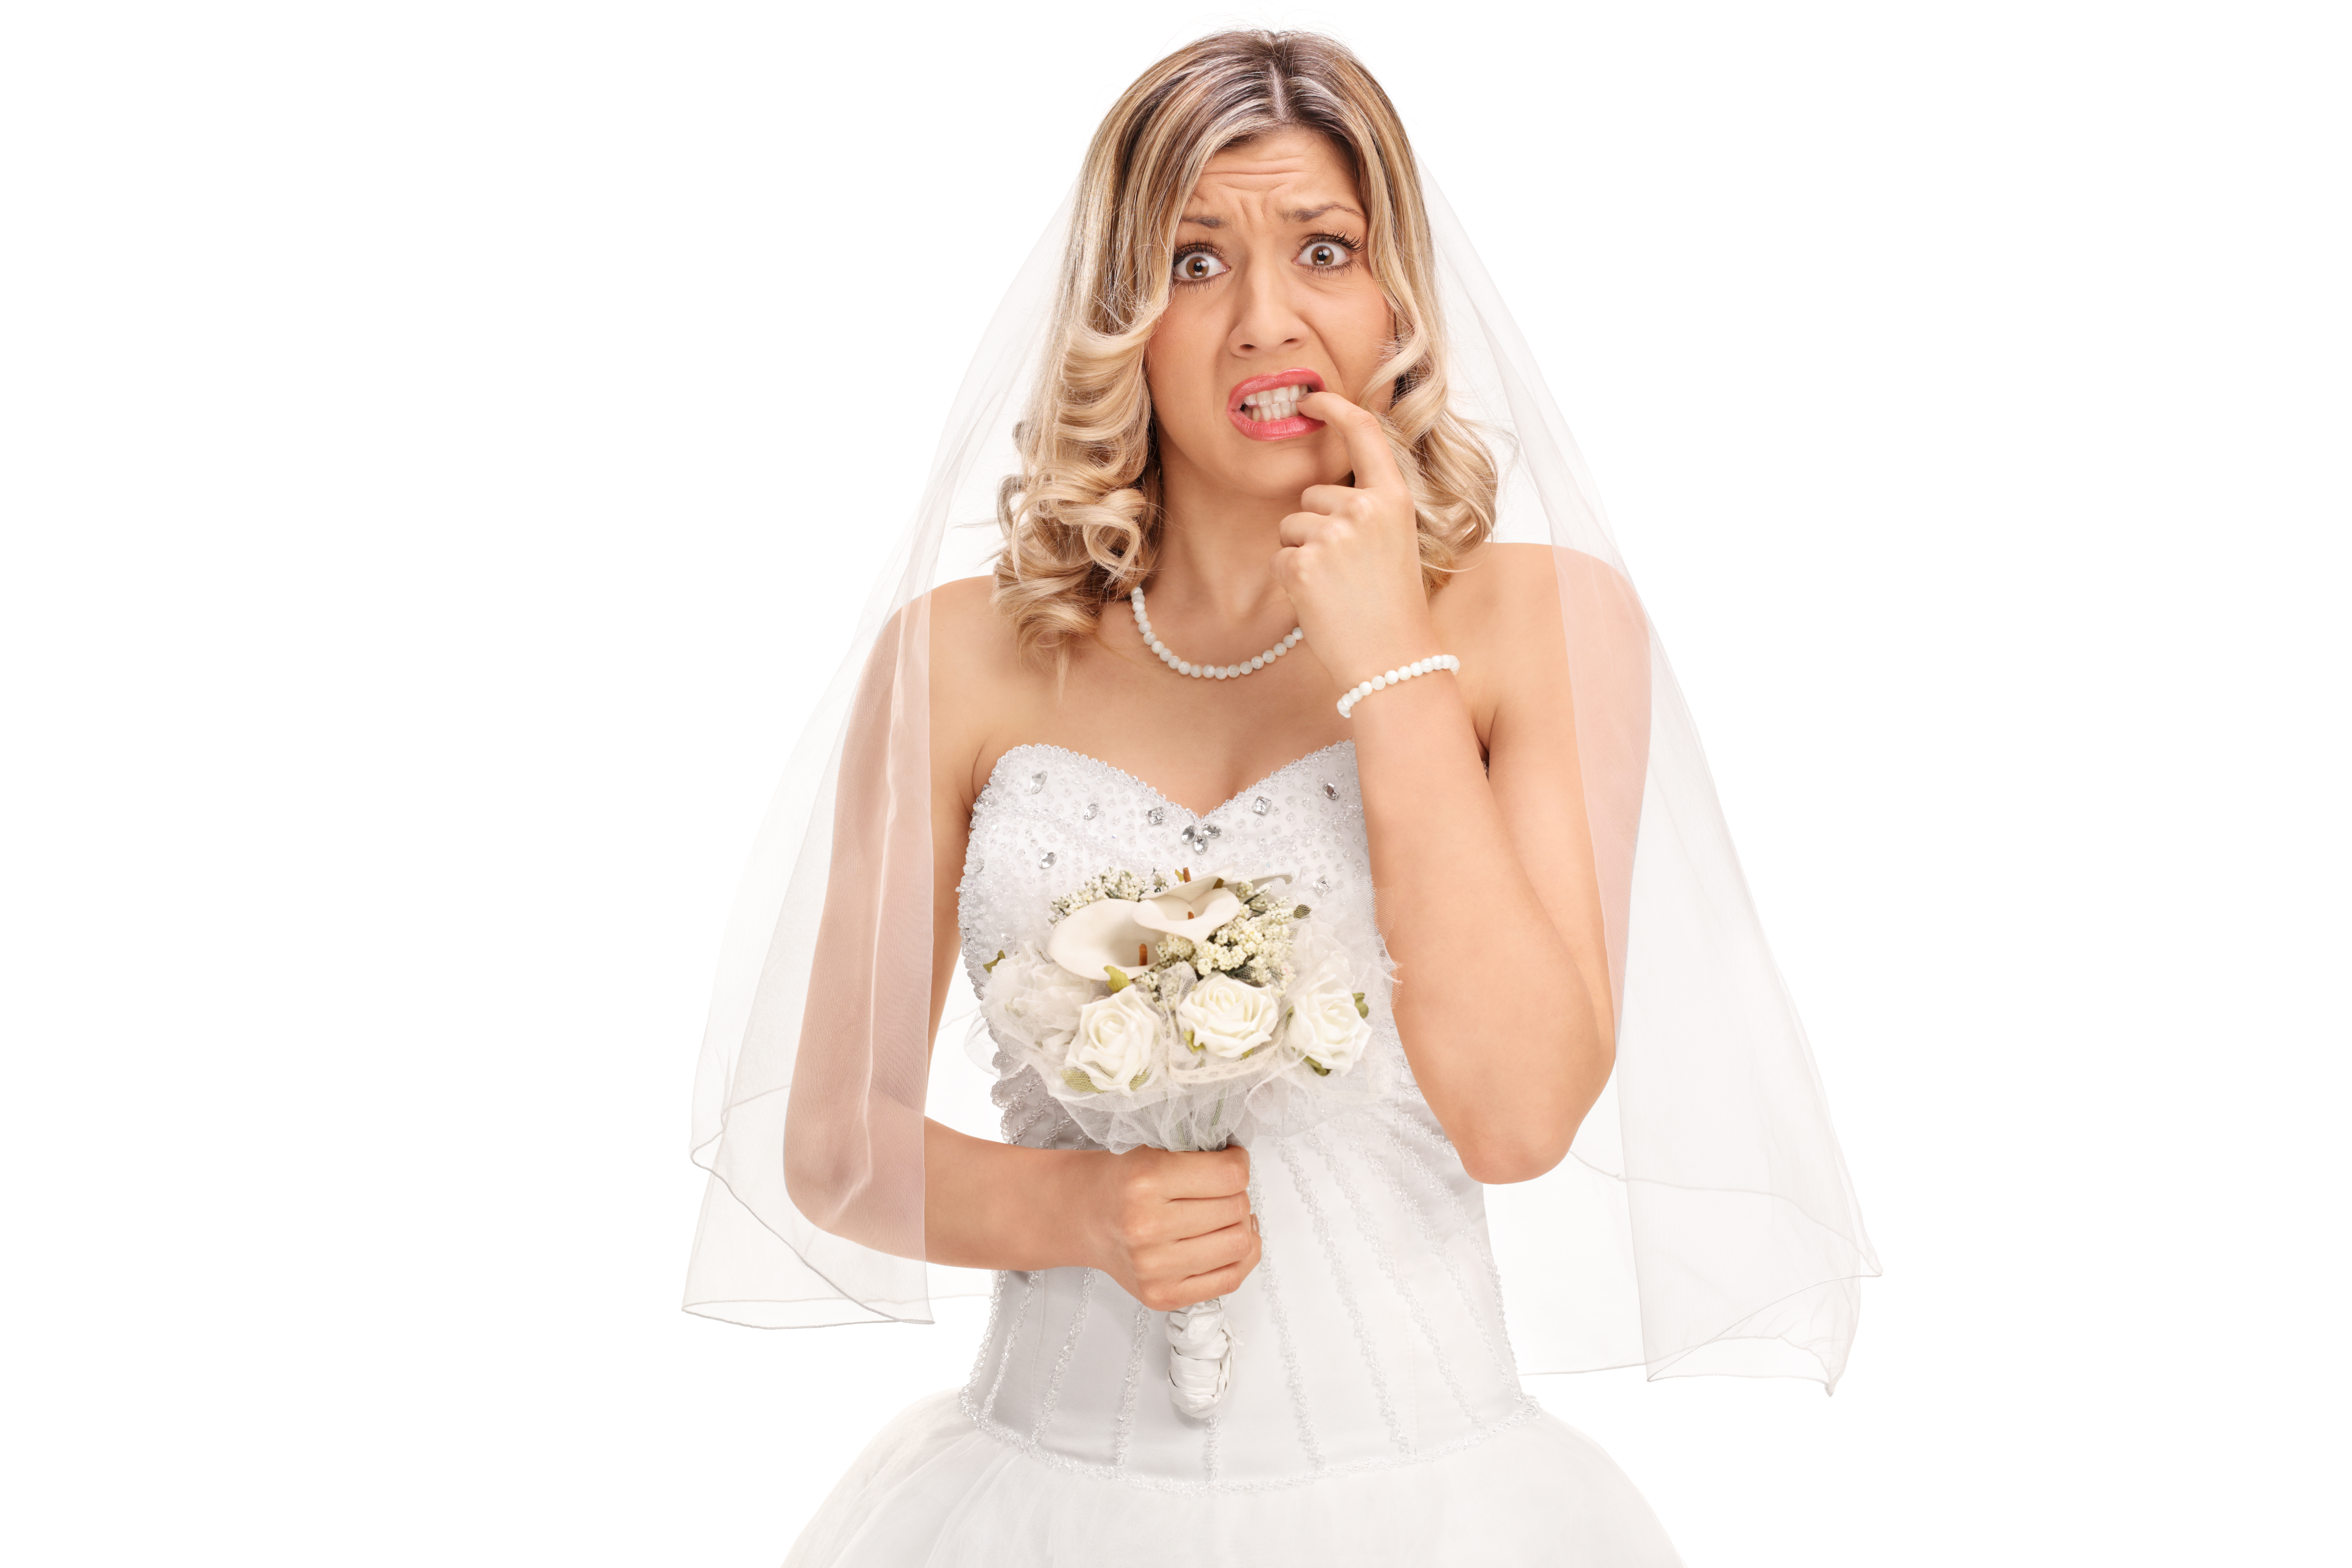 Une jeune mariée nerveuse qui se ronge les ongles | Source : Shutterstock